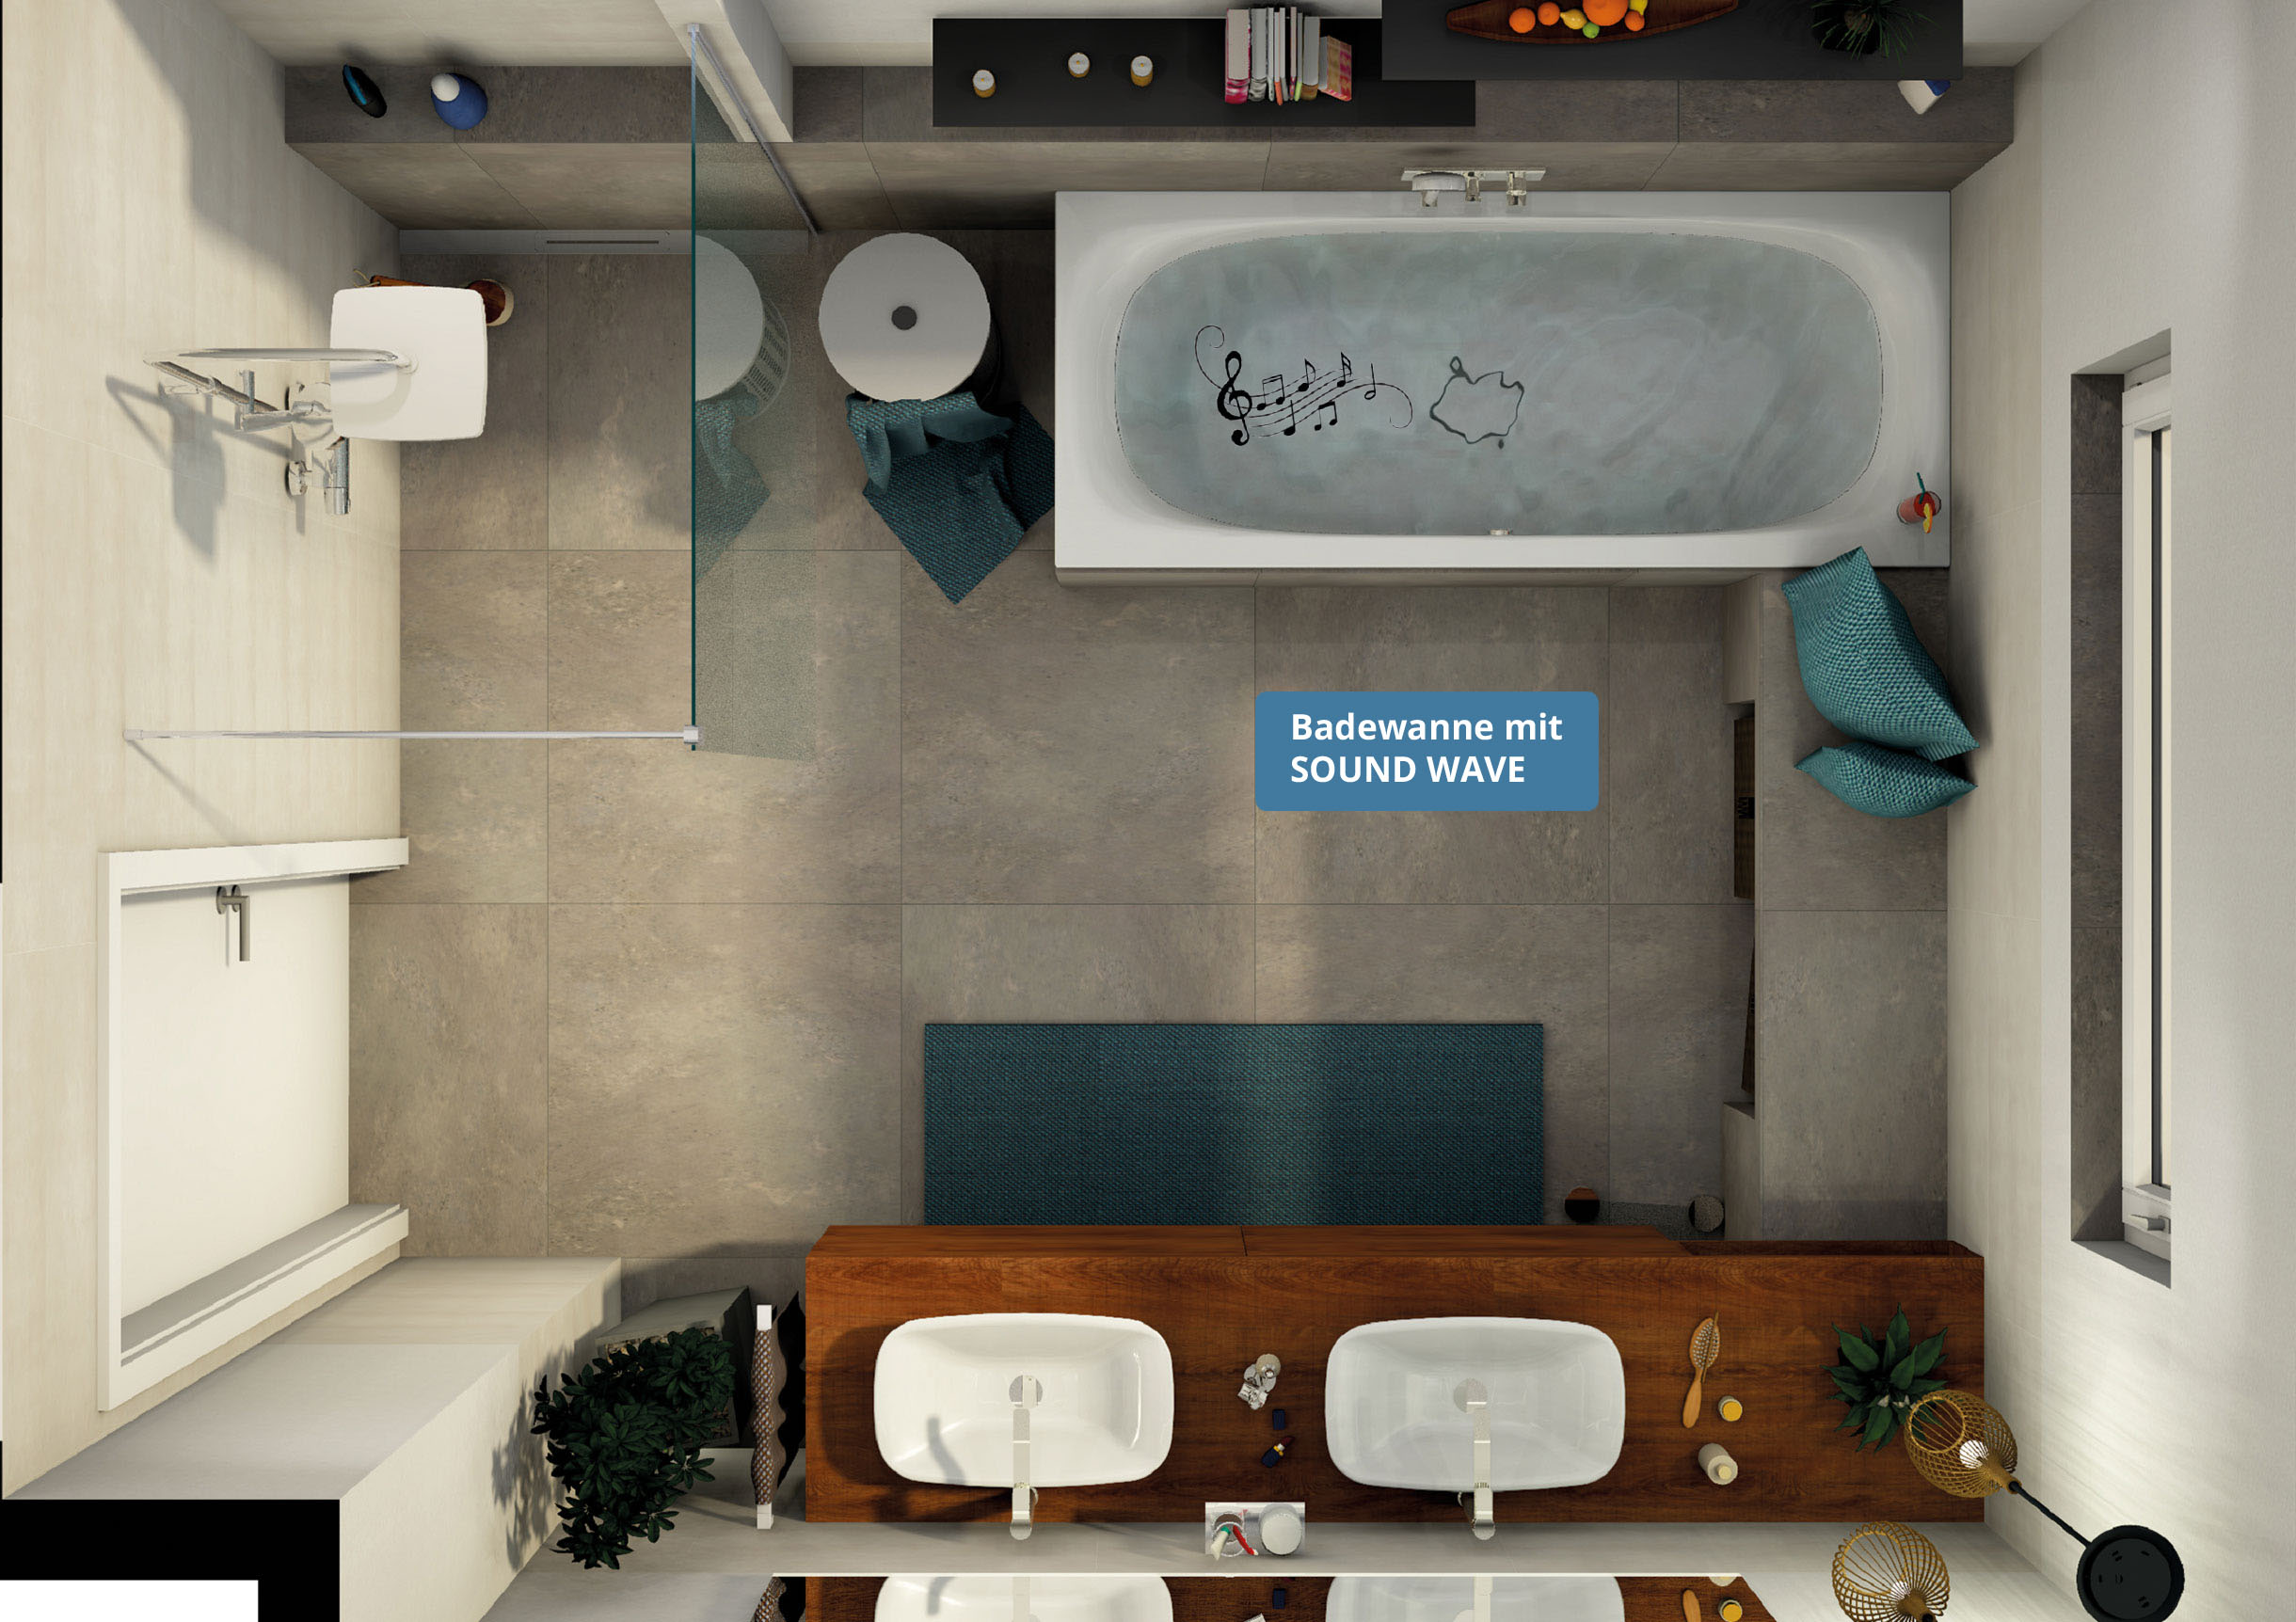 Planungsbeispiel: modernes Badezimmer mit Badewanne mit Sound WAVE; Obenansicht